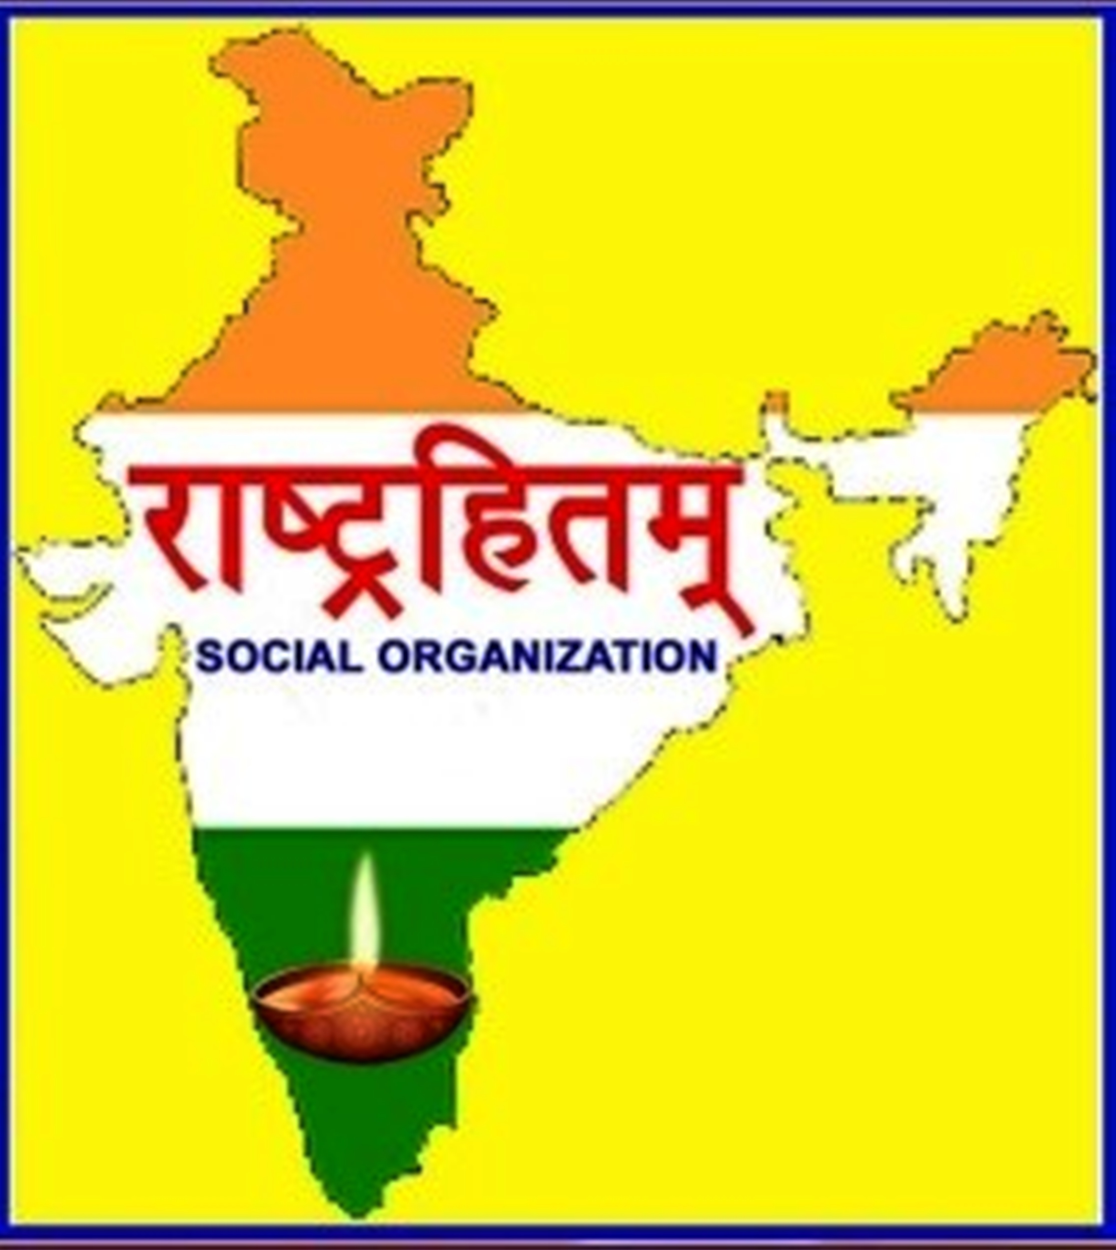 Rashtrahitam Social Organization logo